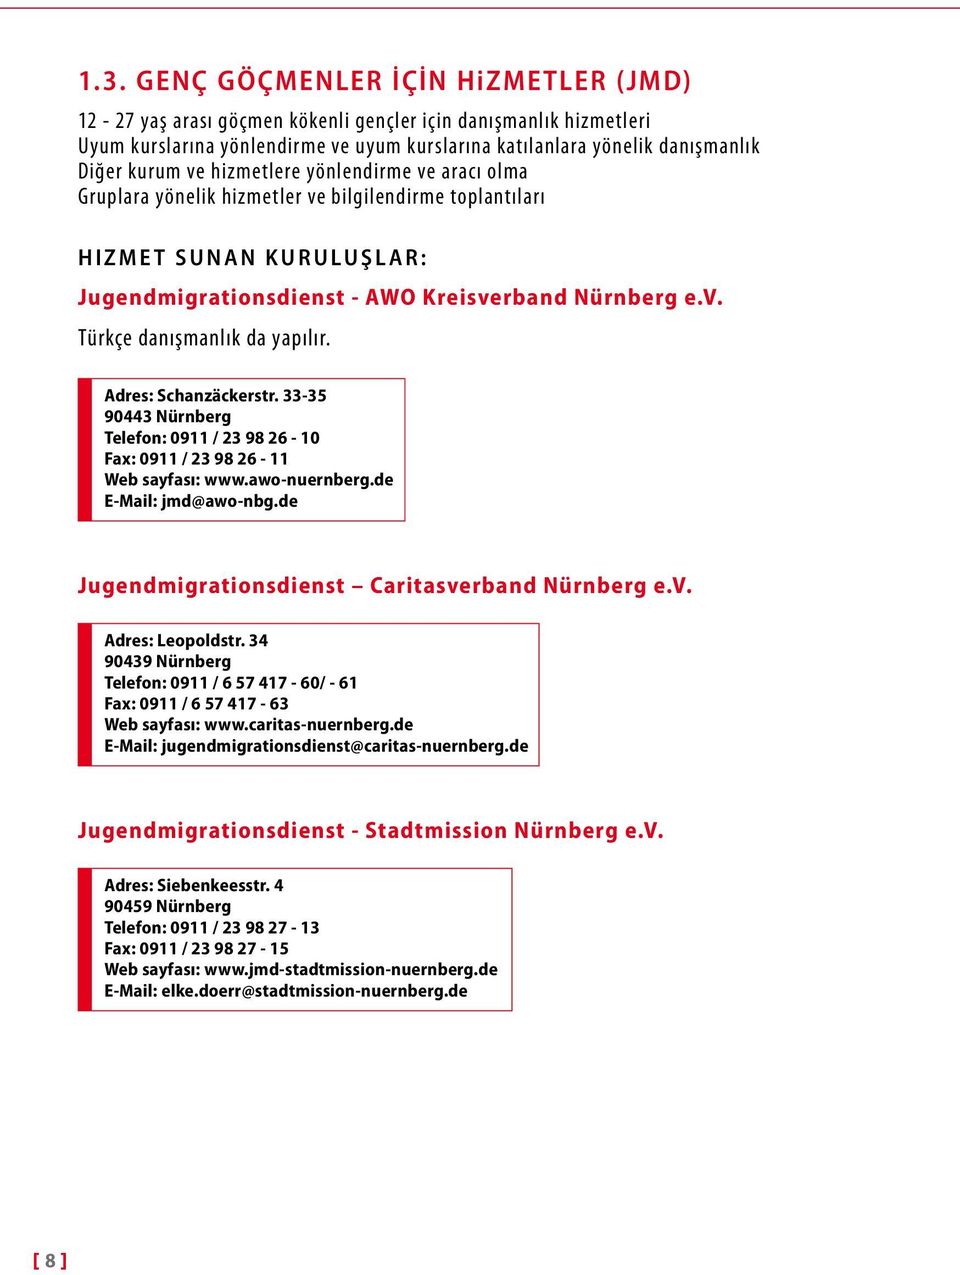 Adres: Schanzäckerstr. 33-35 90443 Nürnberg Telefon: 0911 / 23 98 26-10 Fax: 0911 / 23 98 26-11 Web sayfası: www.awo-nuernberg.de E-Mail: jmd@awo-nbg.